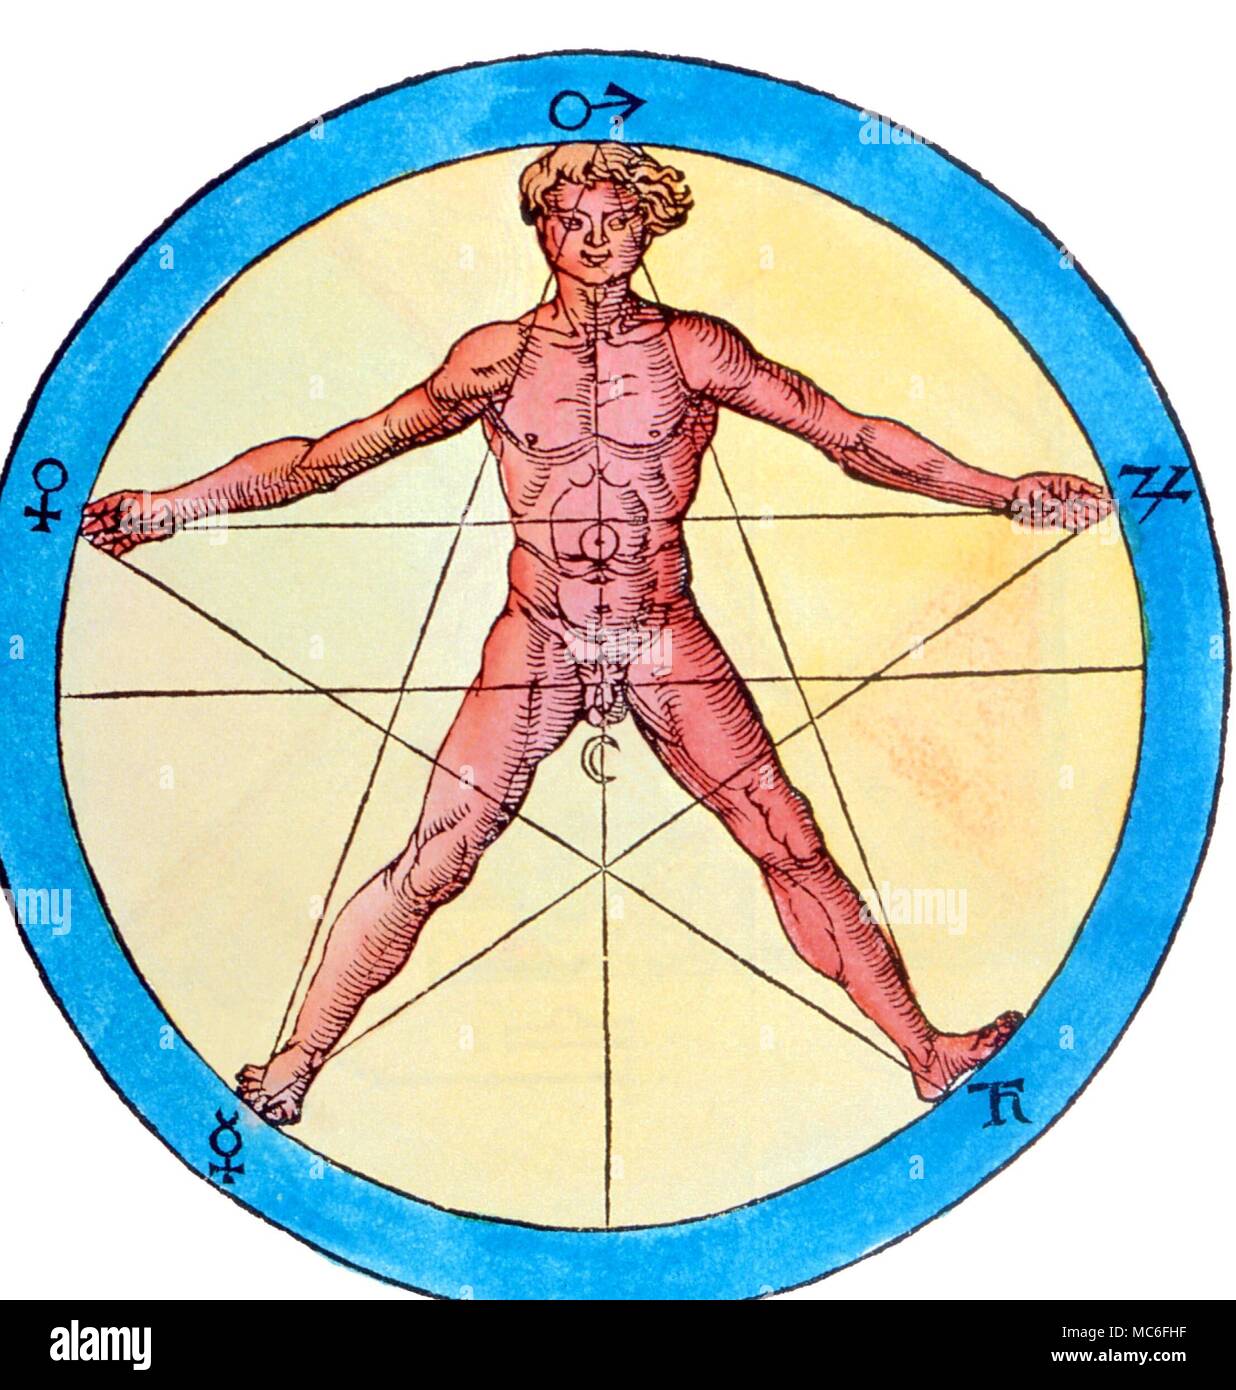 Pianeti Sigils (glifi) delle sette pianeti intorno al pentagrammatic essere umano. Dal 1532 edizione di Agripa 'Occulta Philosophia' Foto Stock